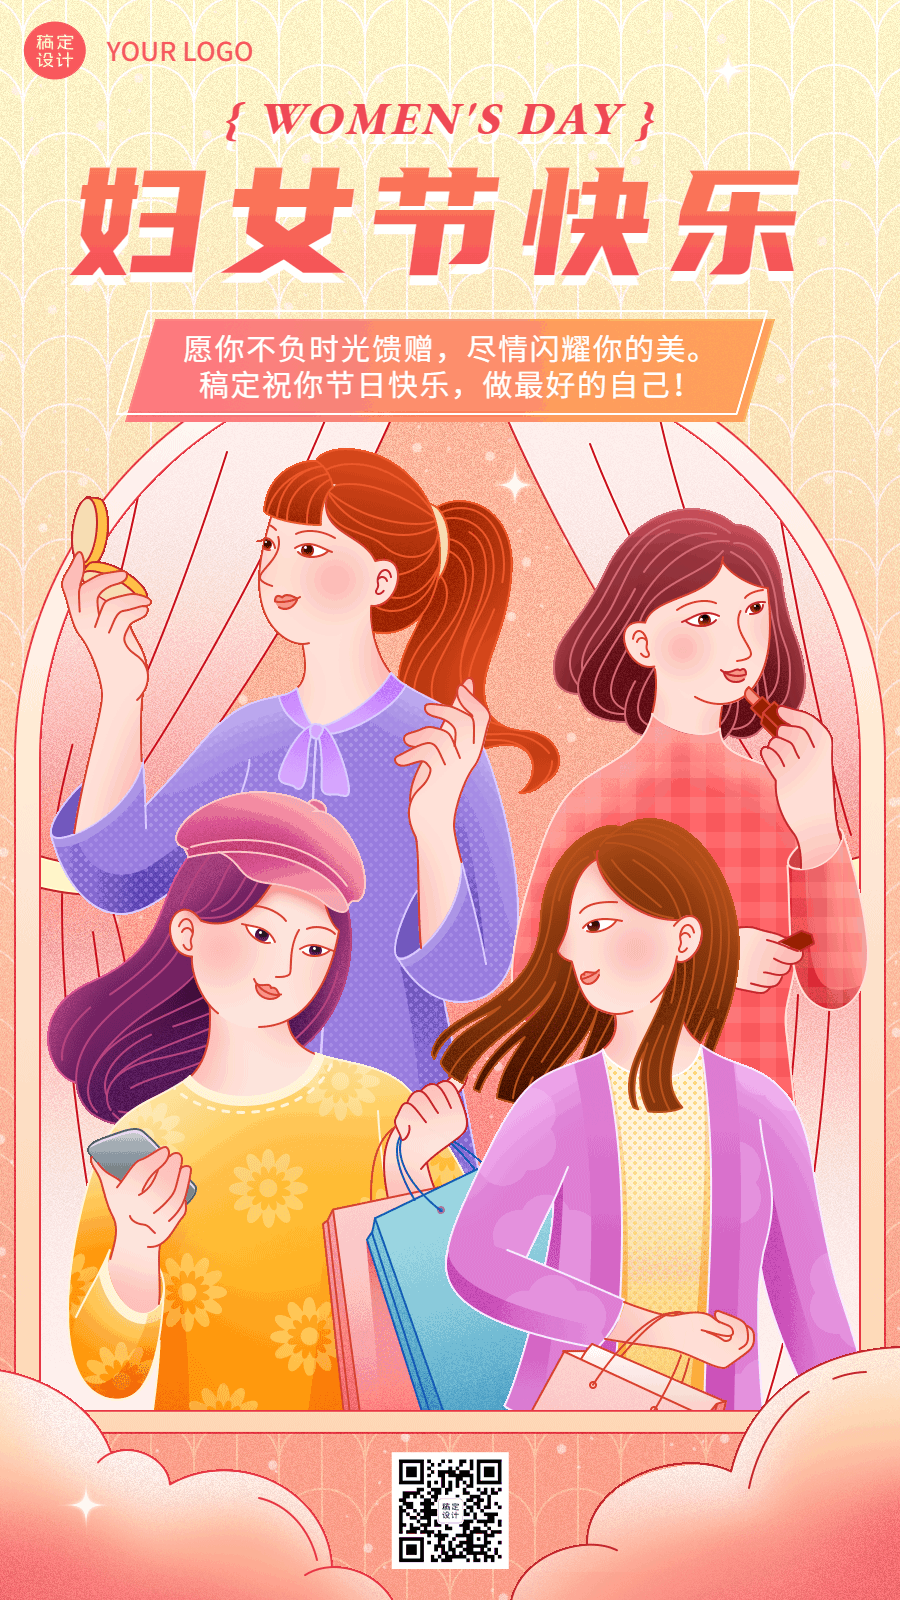 三八妇女节节日祝福动态海报